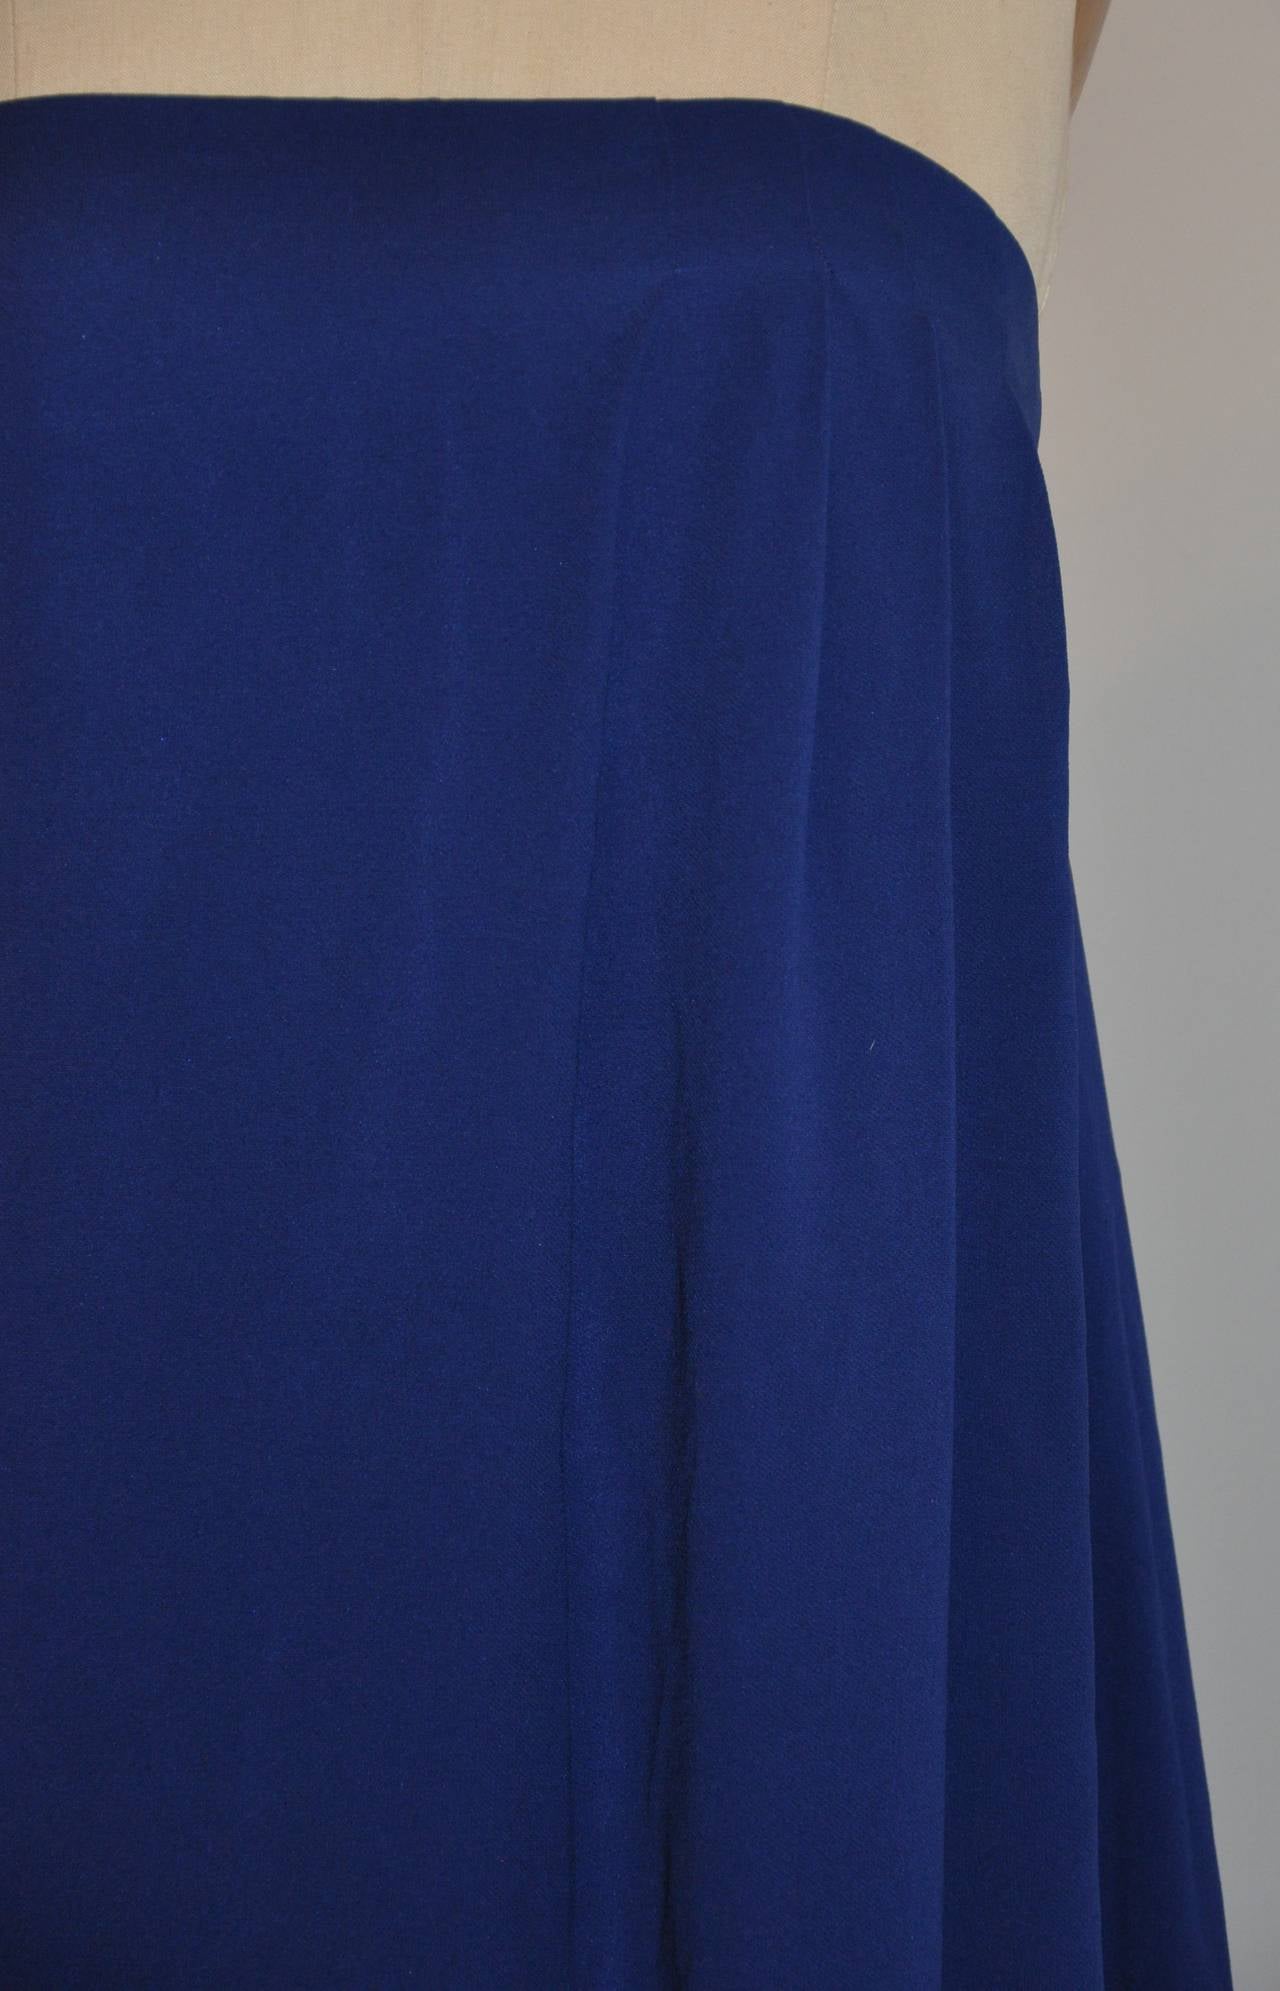 Dieses wunderbar elegante, trägerlose Cocktailkleid von Jil Sander in kräftigem Blau ist mit einem innenliegenden, schwarzen, elastischen Band mit Haken und Ösen verstärkt, um die Passform und das Aussehen dieses wunderbaren Kleides zu unterstützen.